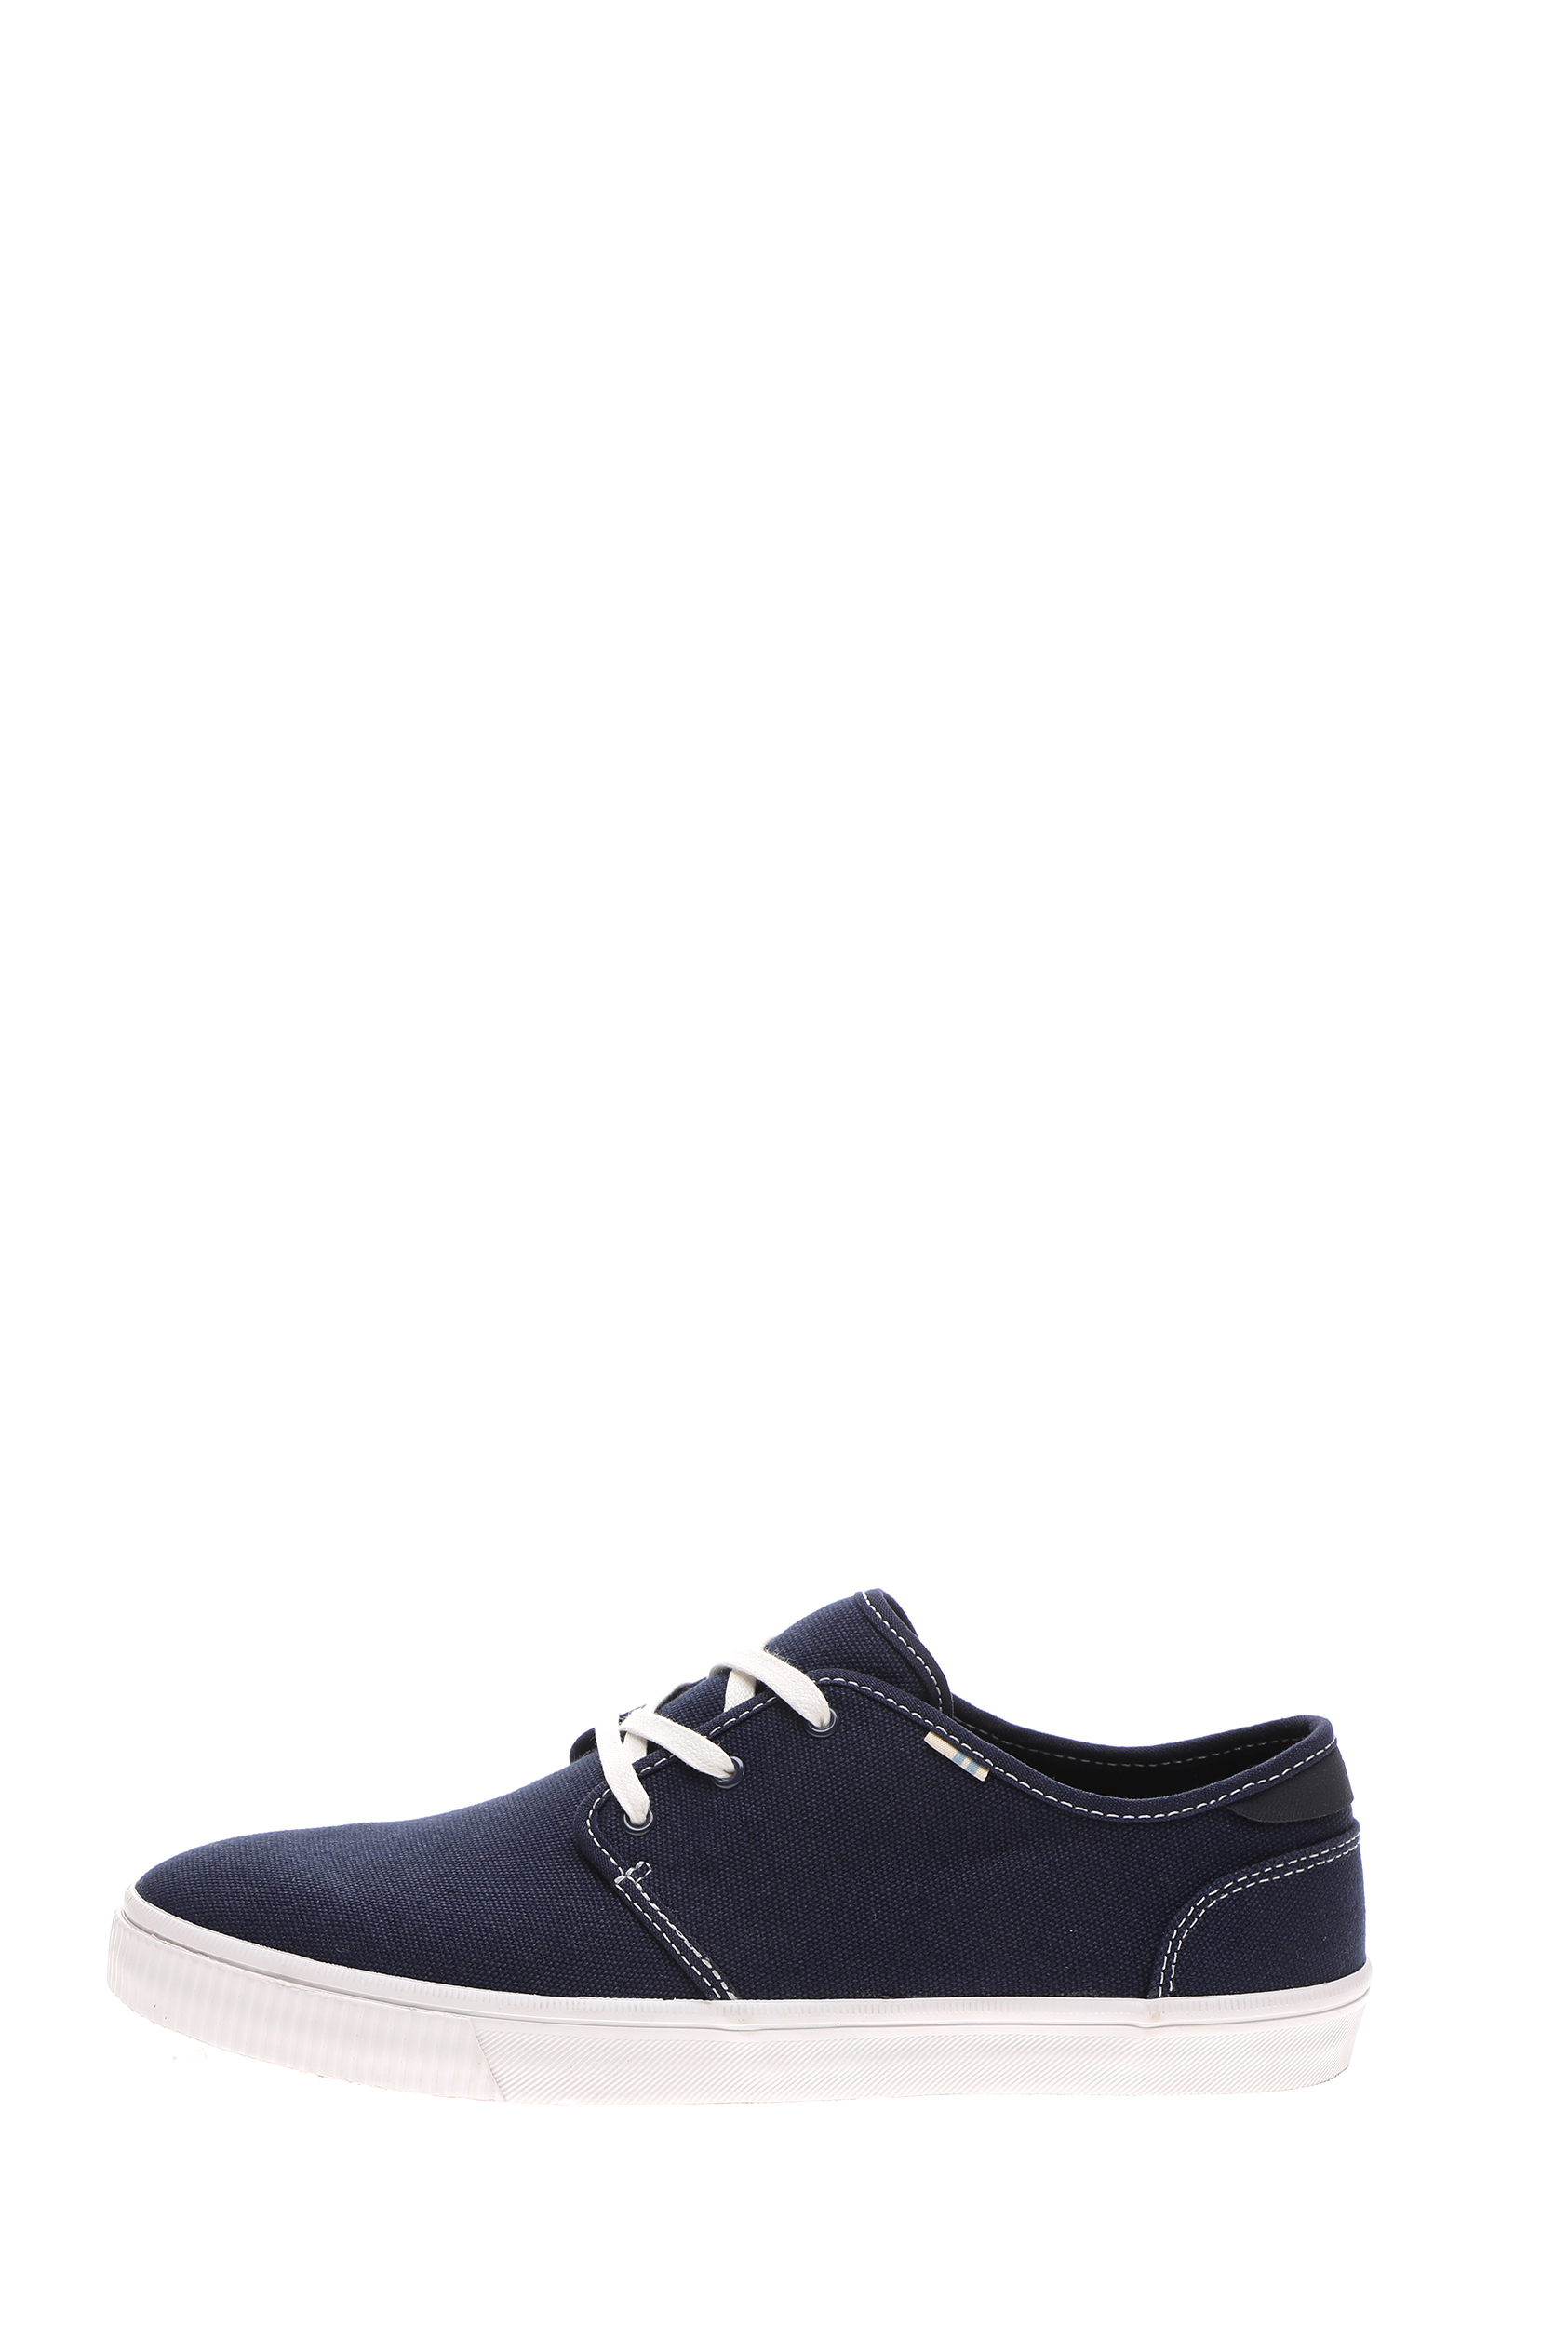 Ανδρικά/Παπούτσια/Sneakers TOMS - Ανδρικά παπούτσια sneakers TOMS NVY CVS/CONTRST STC MN CARL SN μπλε